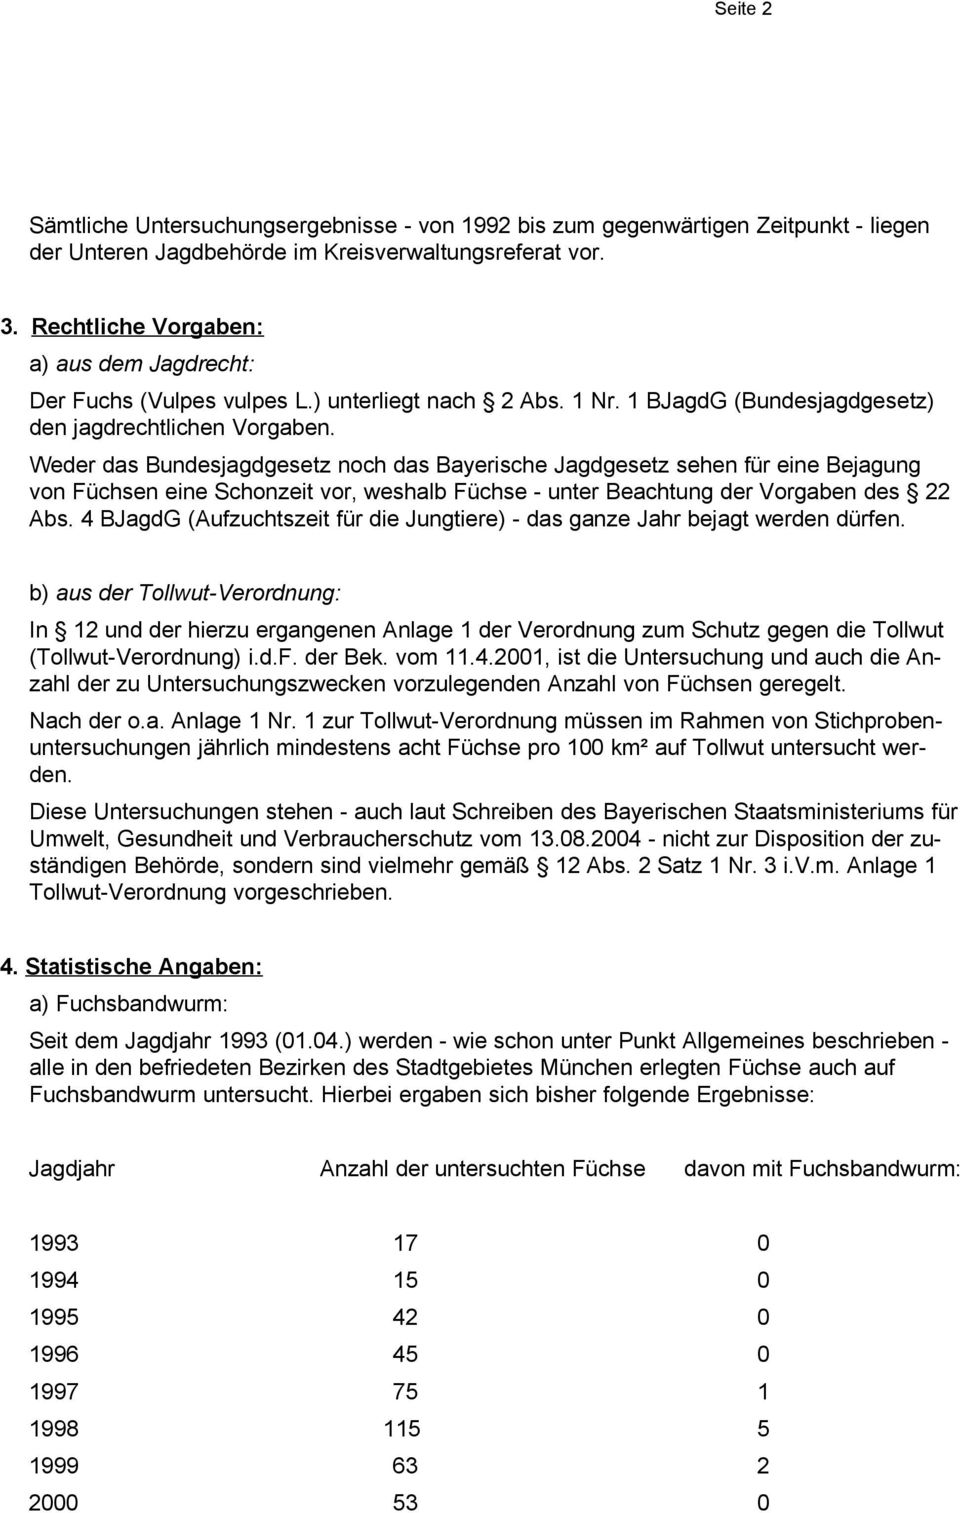 Weder das Bundesjagdgesetz noch das Bayerische Jagdgesetz sehen für eine Bejagung von Füchsen eine Schonzeit vor, weshalb Füchse - unter Beachtung der Vorgaben des 22 Abs.